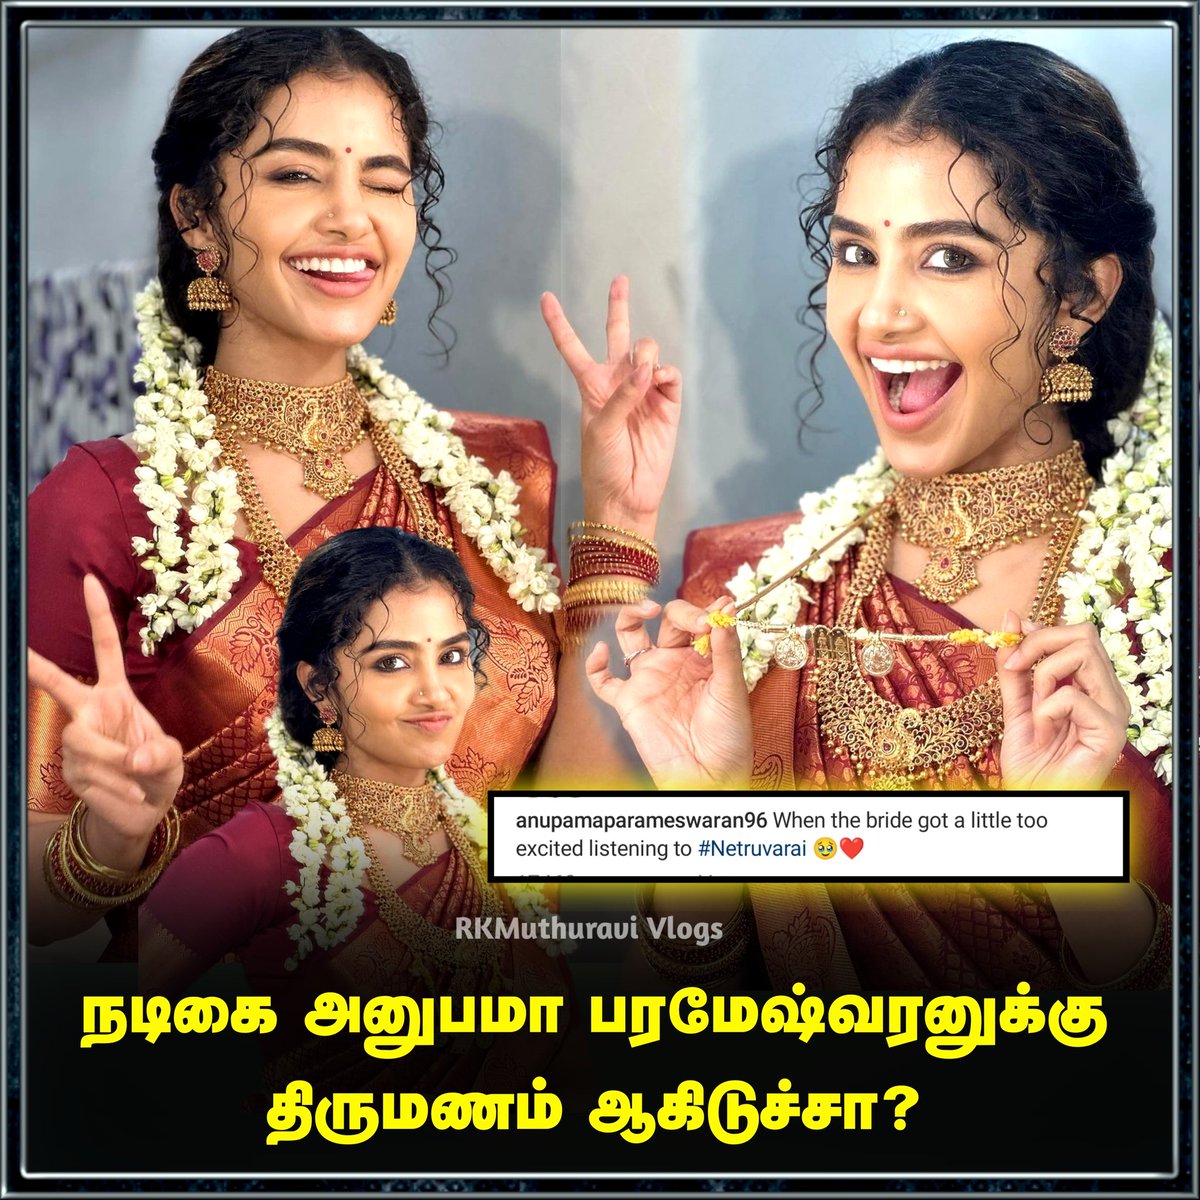 நடிகை அனுபமா பரமேஷ்வரனுக்கு திருமணம்‌ ஆகிடுச்சா?

#anupamaparameswaranfans #anupamaparameswaran96 #AnupamaParameshwaran #tamilactress #marriage #trendingnow #LatestNews